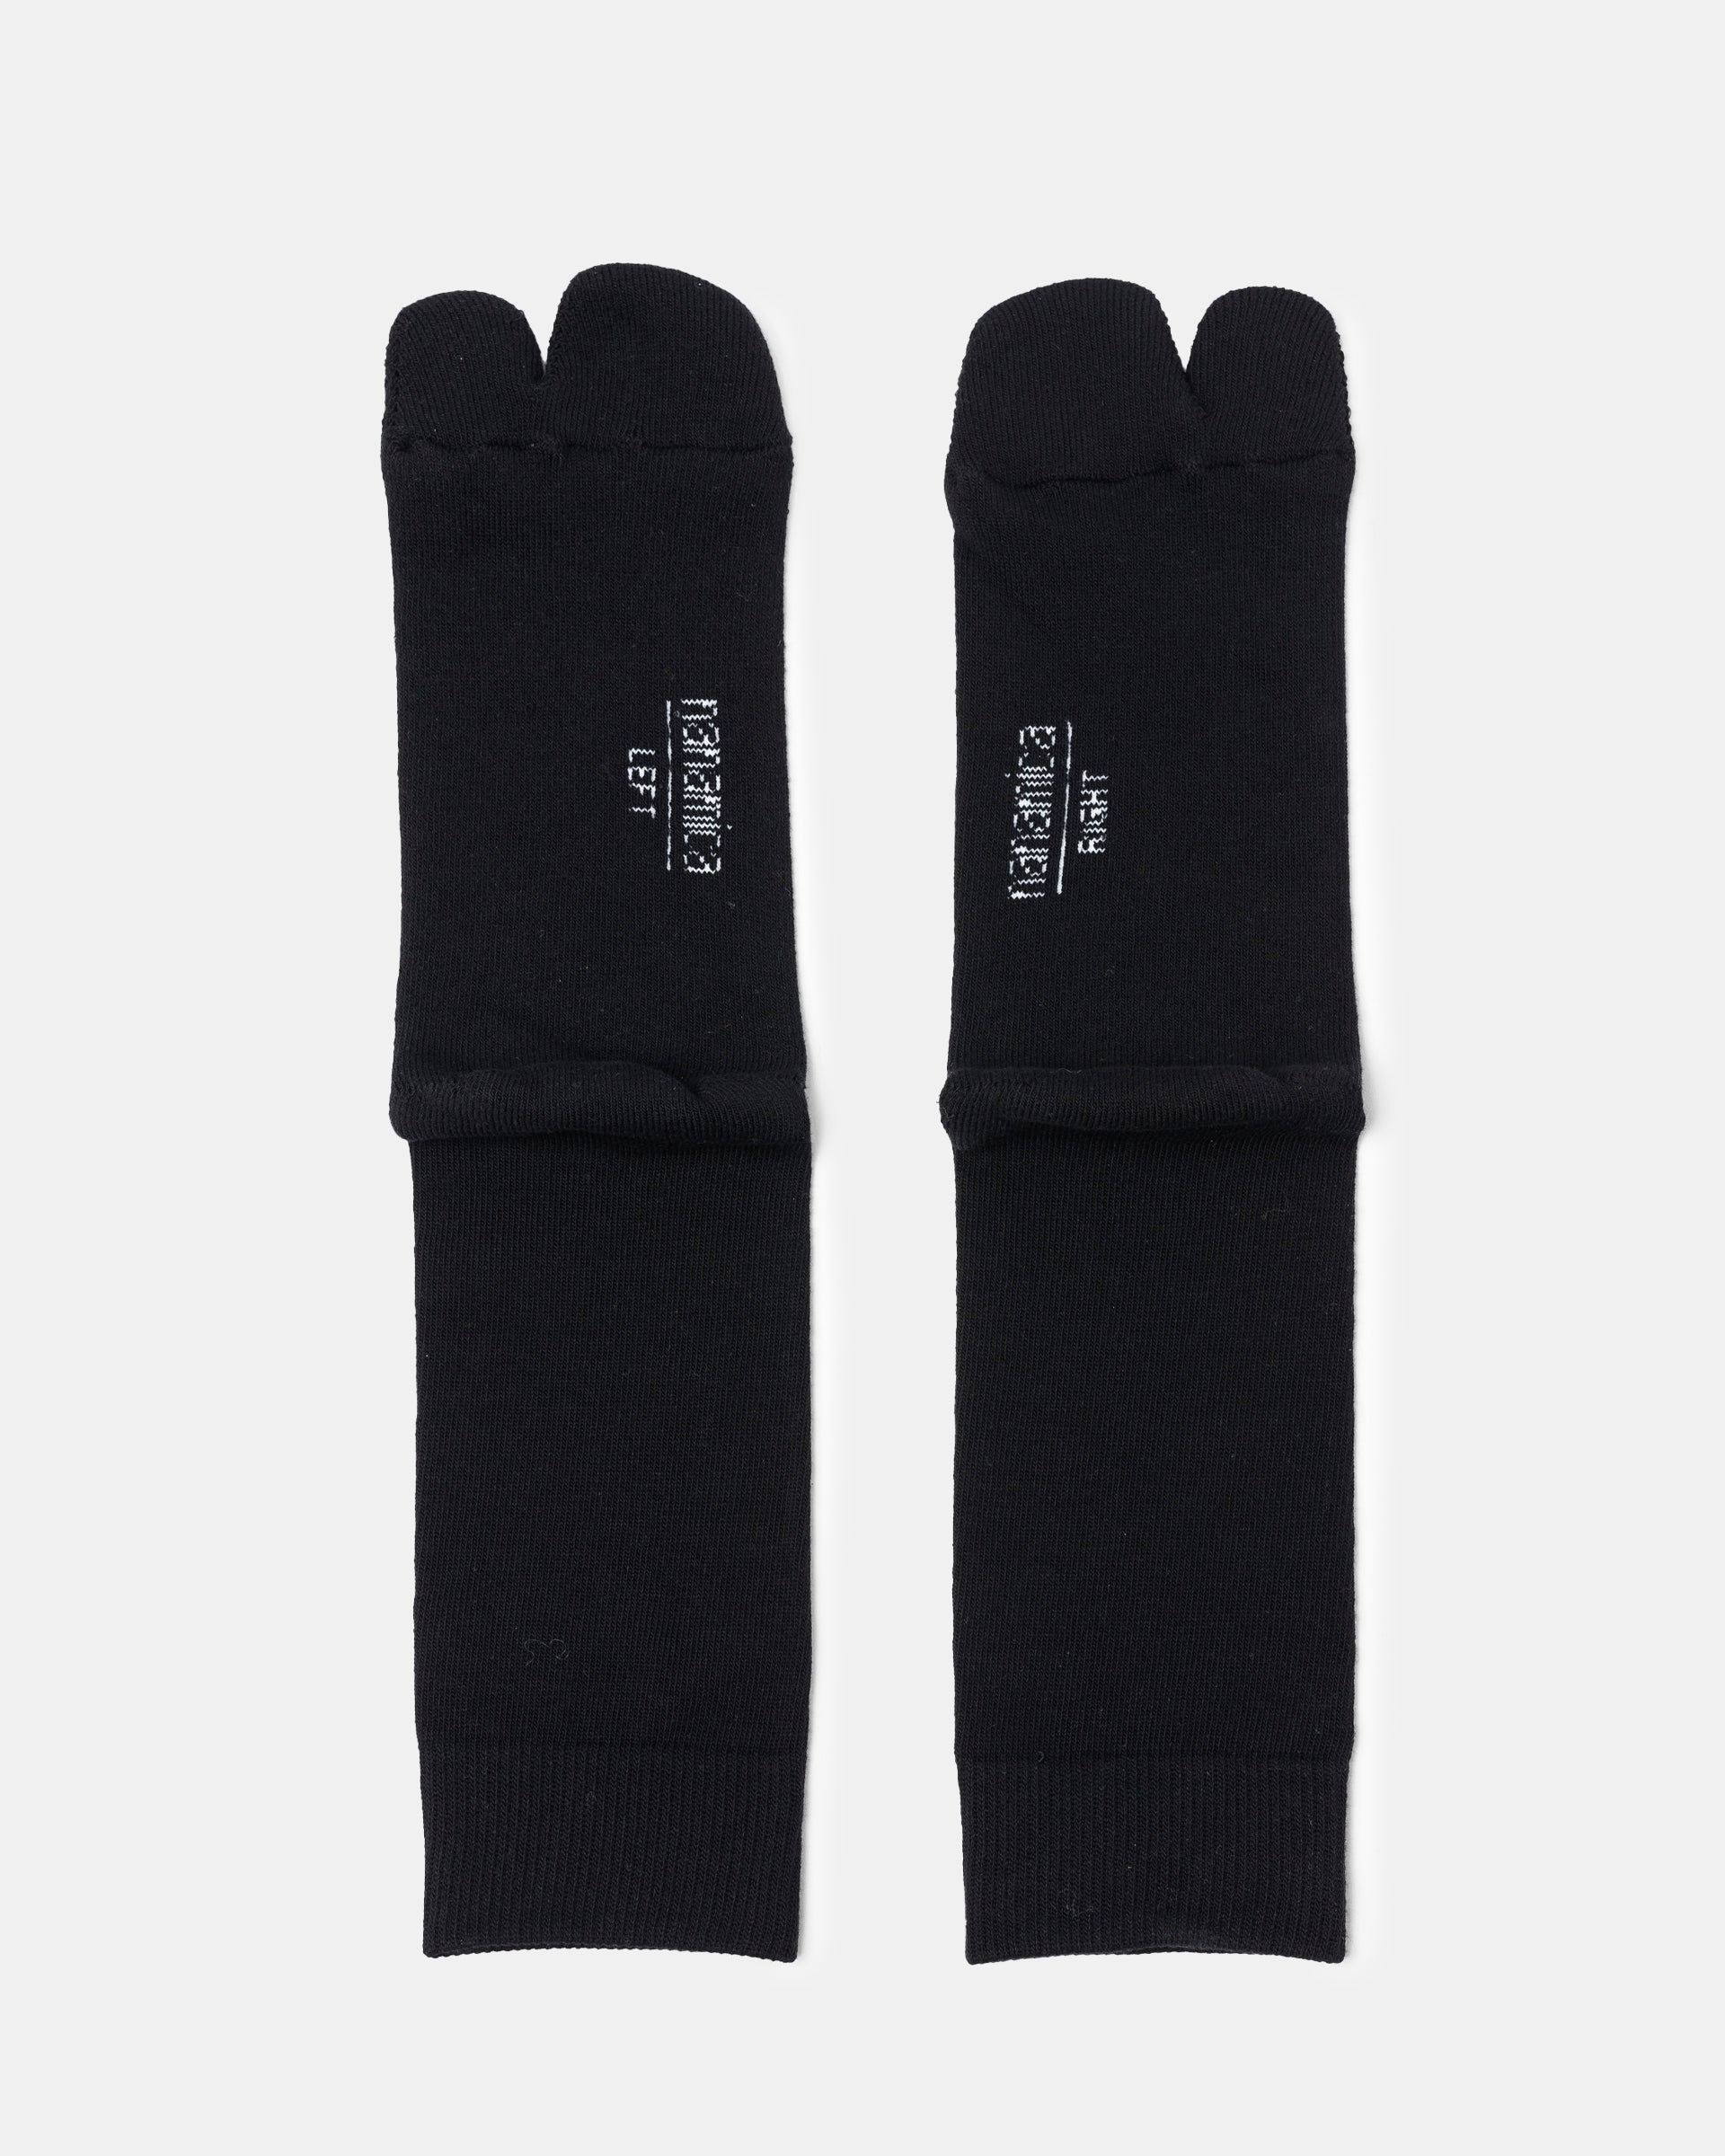 Field Socks in Black